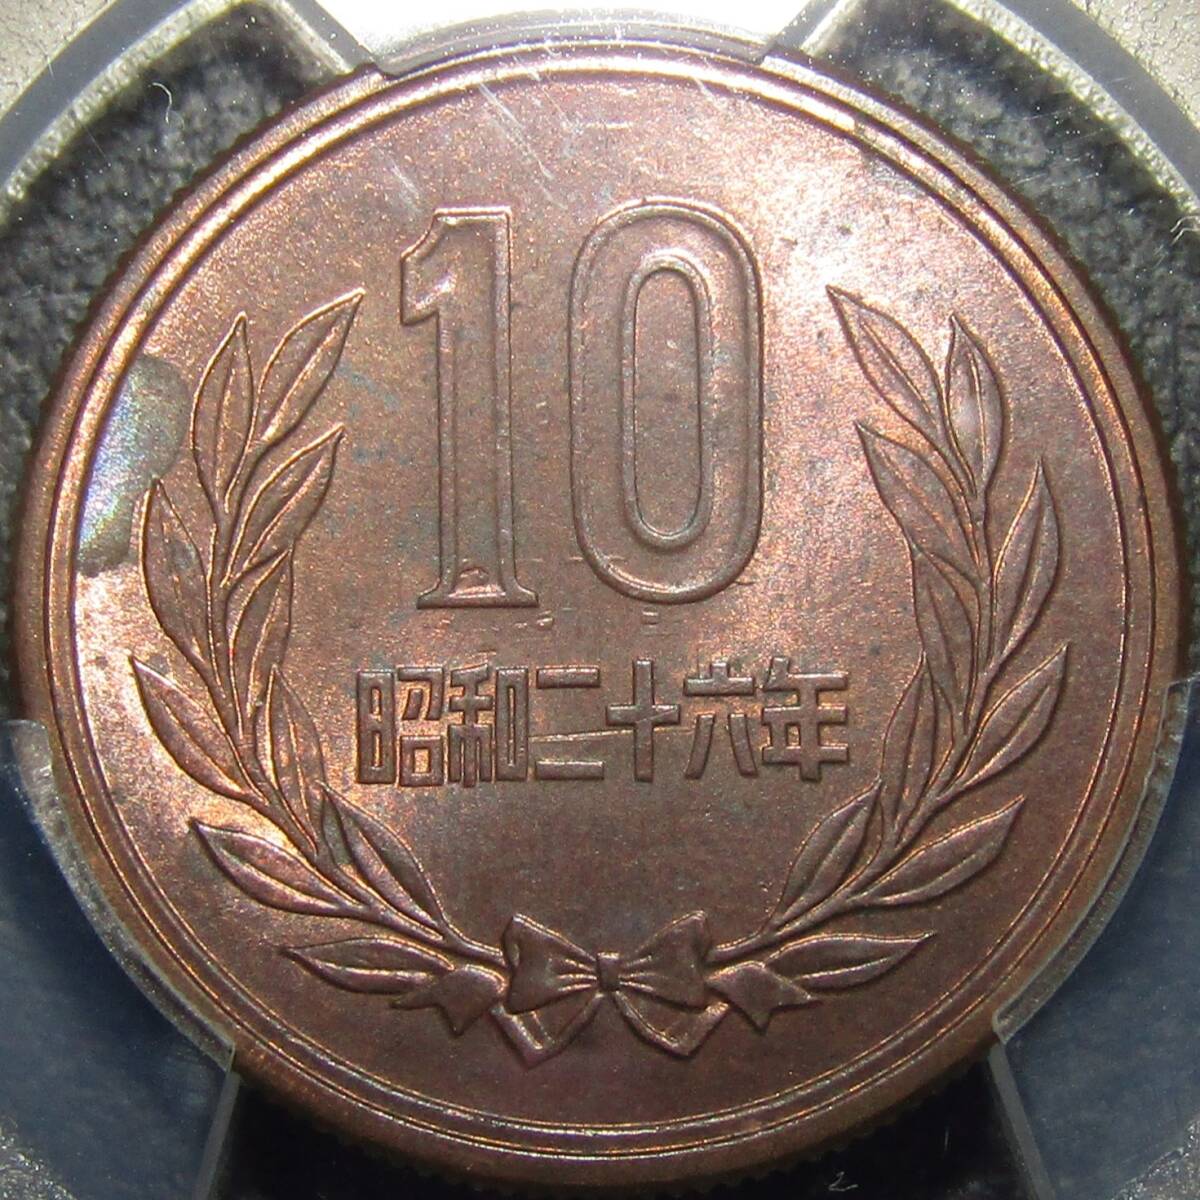 10円青銅貨 昭和26年 PCGS MS63RB 年号面に裏写りあり (おそらく希少品です)の画像4